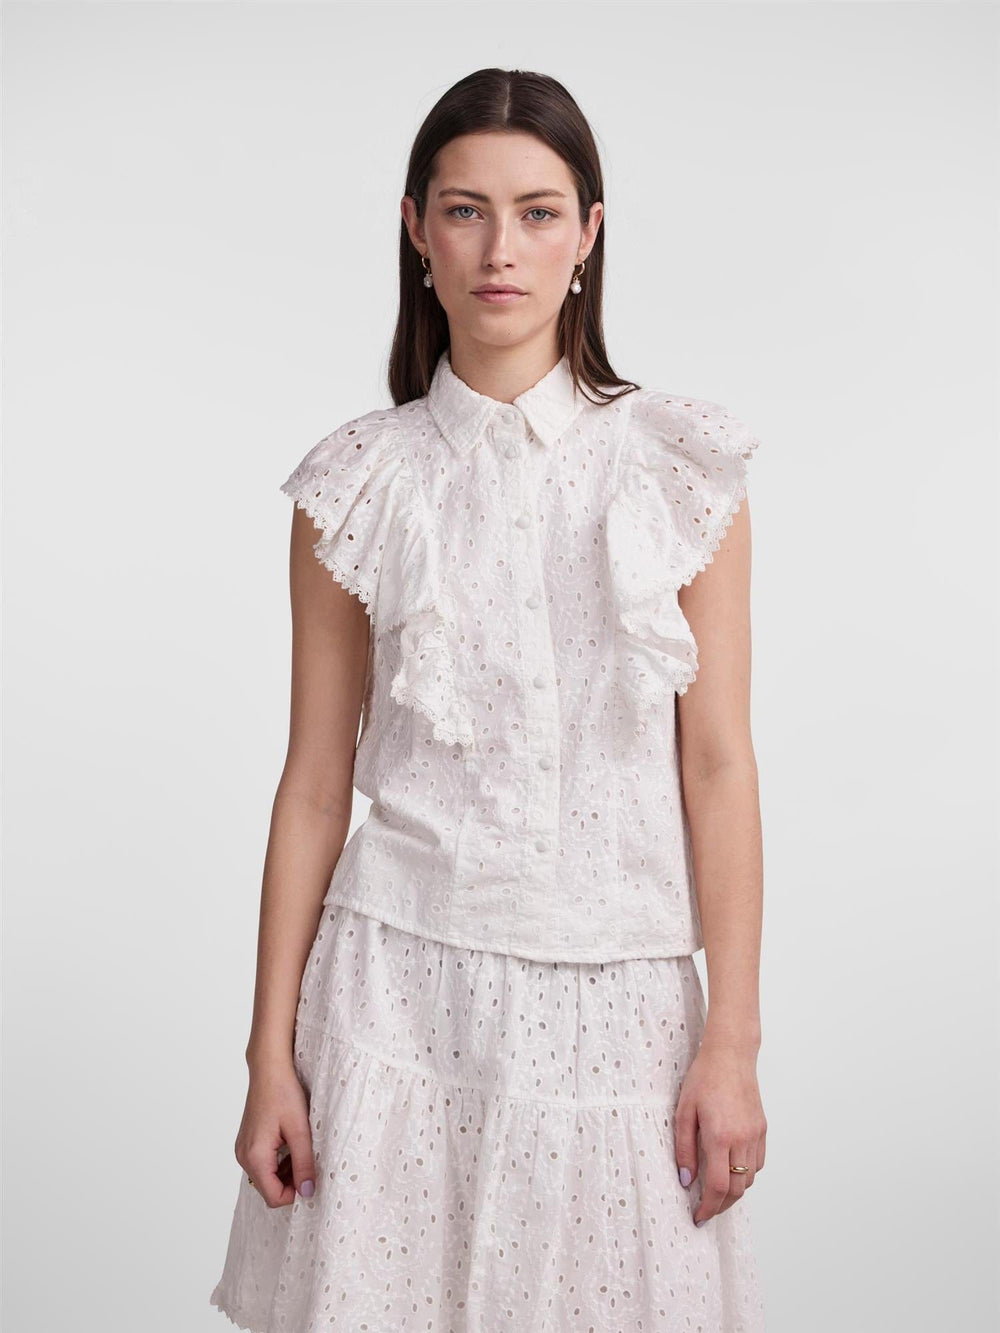 Yasjimbo SL Shirt S. Star White | Topper | Smuk - Dameklær på nett